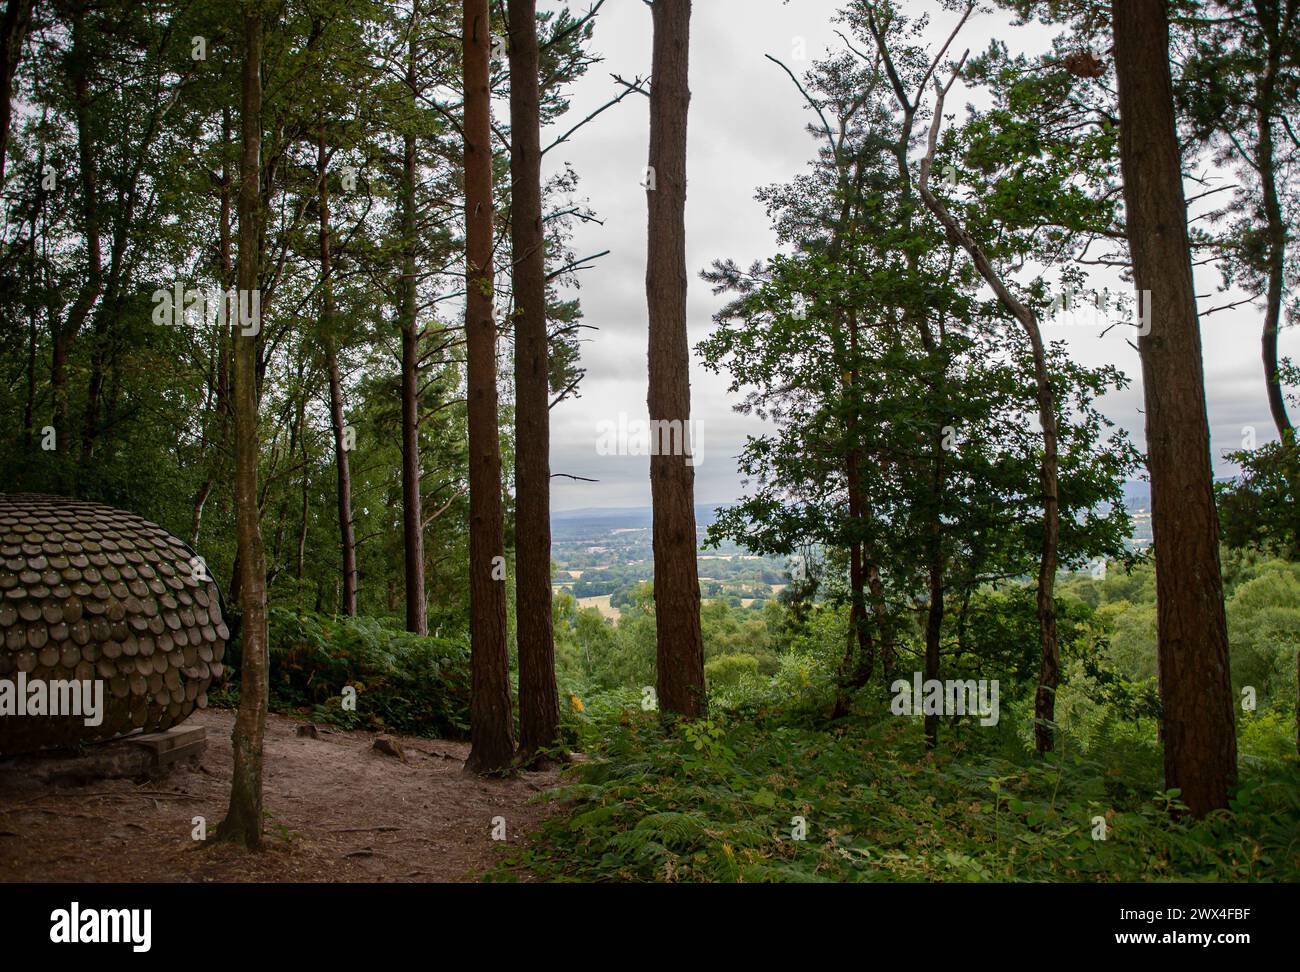 Eine geheimnisvolle hölzerne Kuppel zwischen den hohen Bäumen des Hurtwood Forest, die Kunst mit der ruhigen Schönheit der Natur verbindet Stockfoto